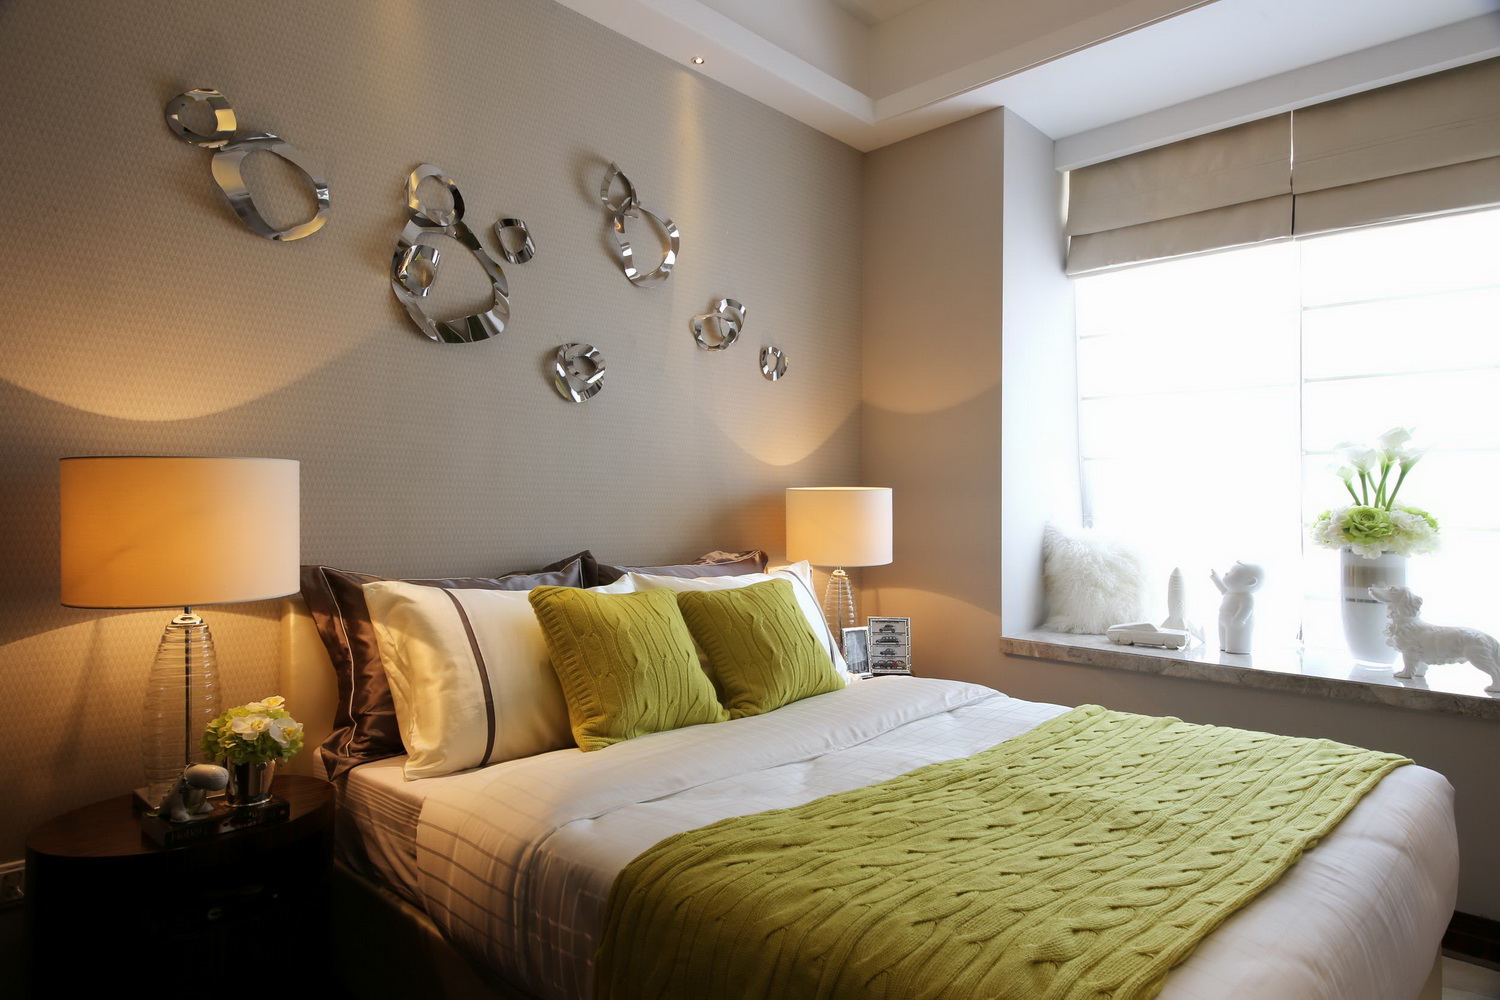 三居 港式 卧室图片来自四川建拓建筑装饰工程有限公司在港式风格的分享